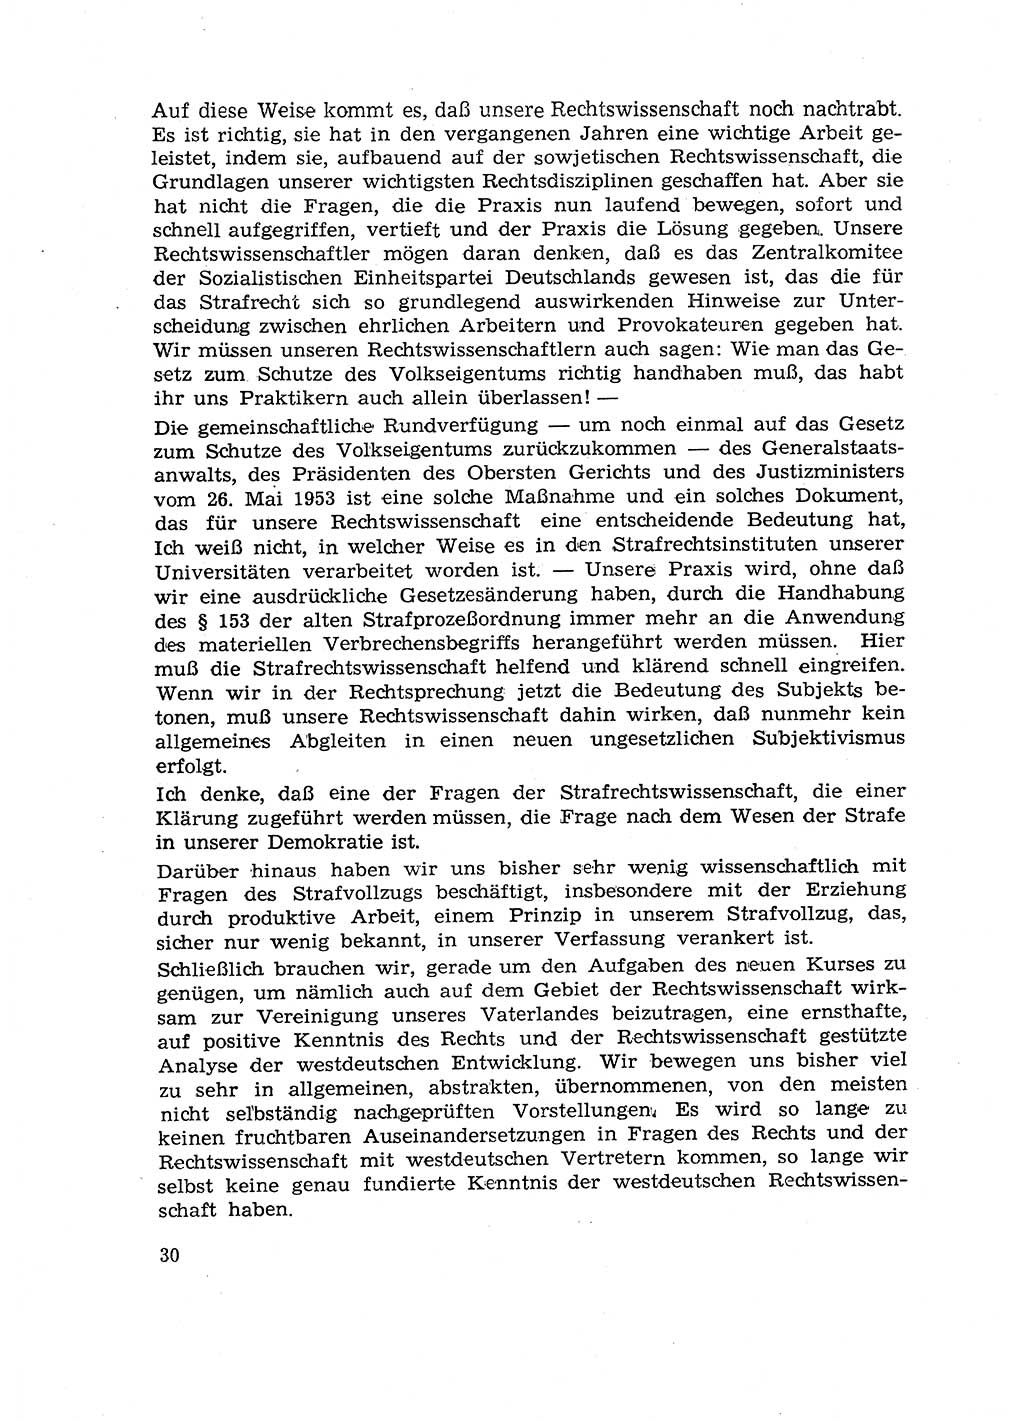 Hauptaufgaben der Justiz [Deutsche Demokratische Republik (DDR)] bei der Durchführung des neuen Kurses 1953, Seite 30 (Hpt.-Aufg. J. DDR 1953, S. 30)